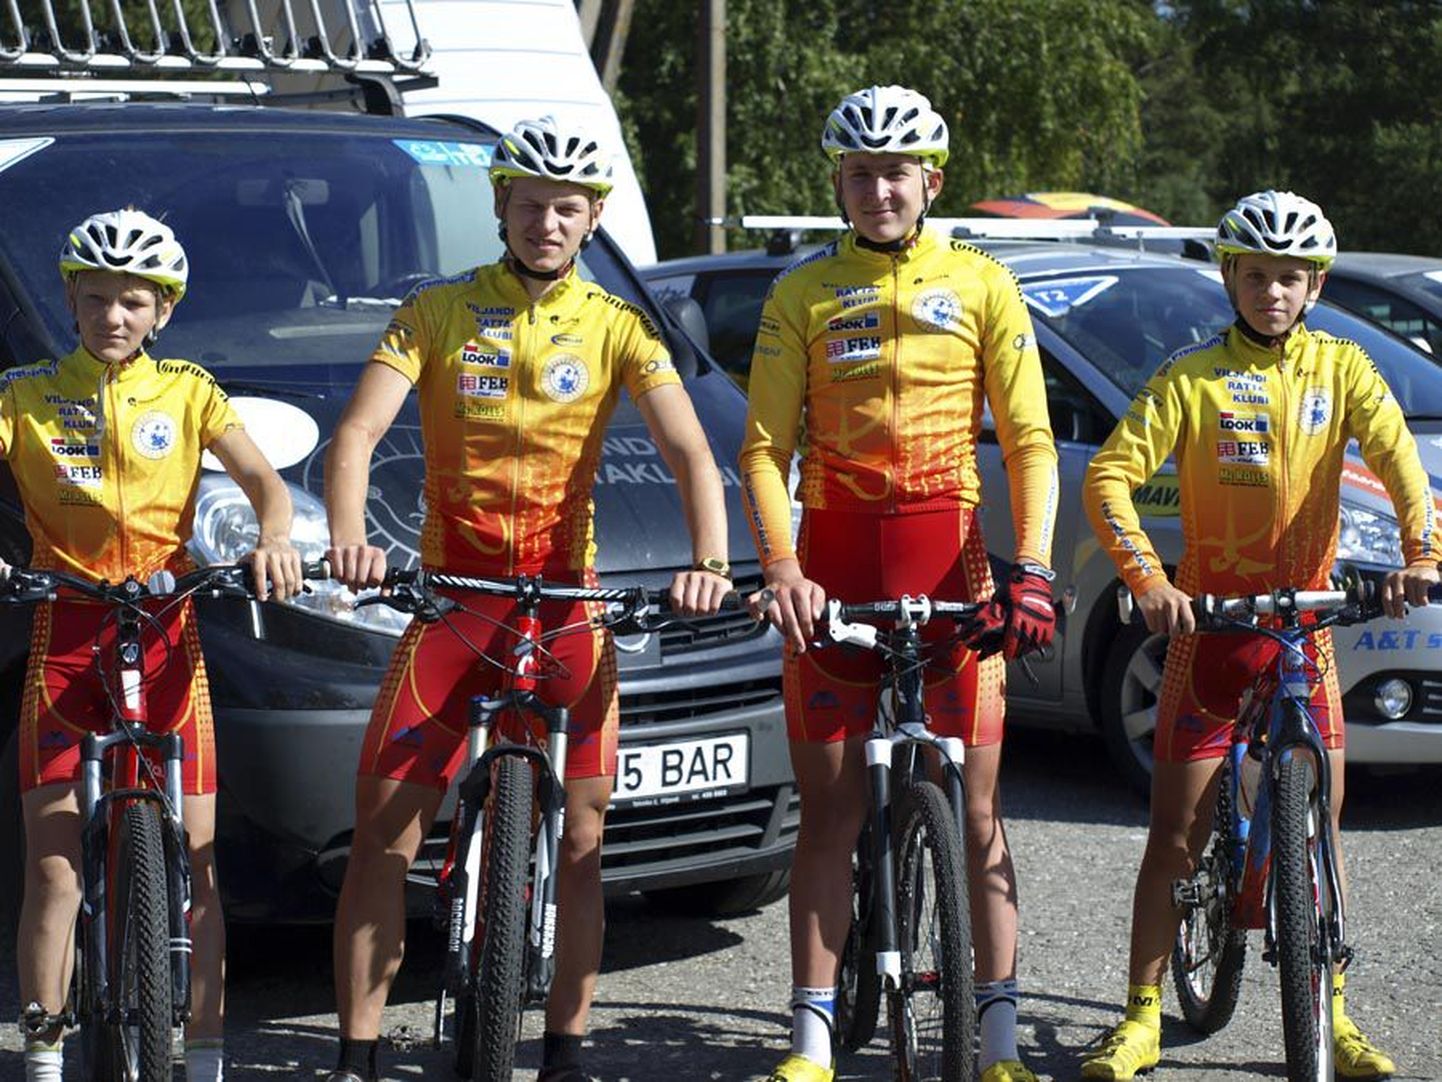 Eesti noorte teatekrossi meistrivõistlustel hõbemedali pälvinud Viljandi rattaklubi meeskonda kuulusid (vasakult) Toomas Vool, Greg Hallop, Kristjan Johanson ja Joosep Sankmann.